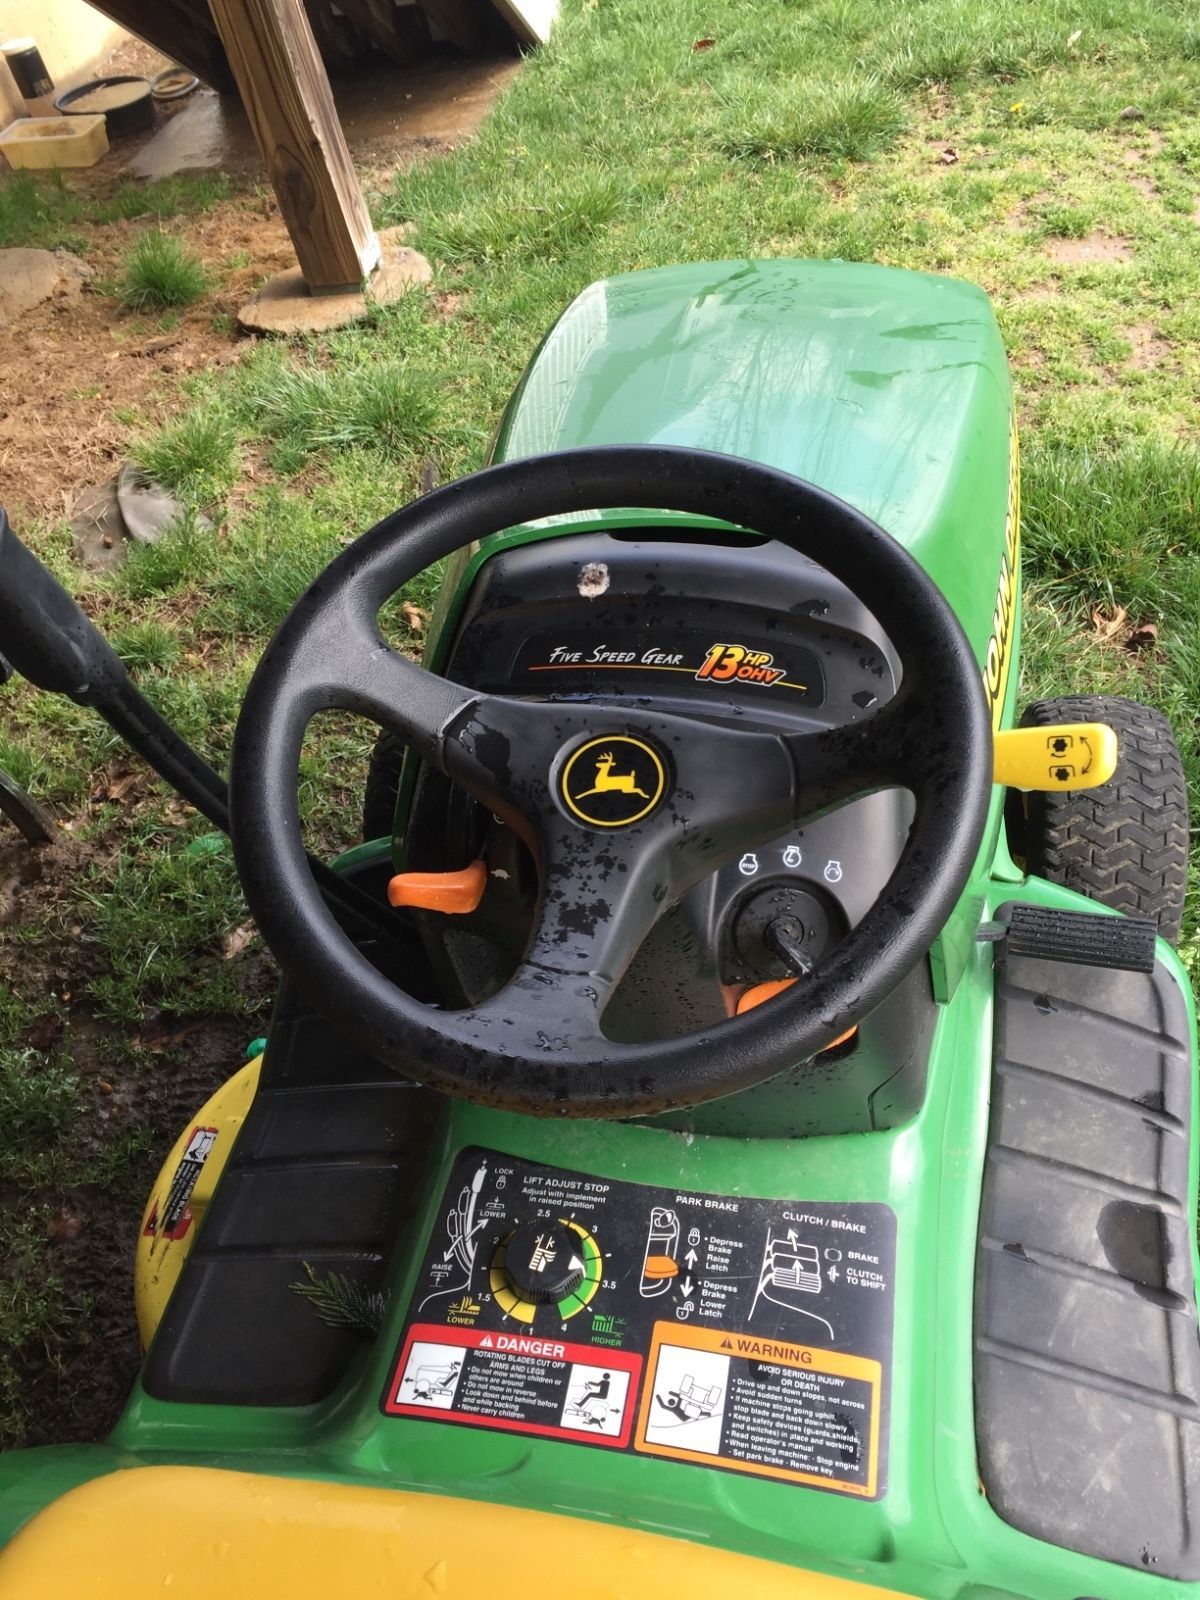 John Deere L133 Lawn Mower Repair Manuals Pixelphire